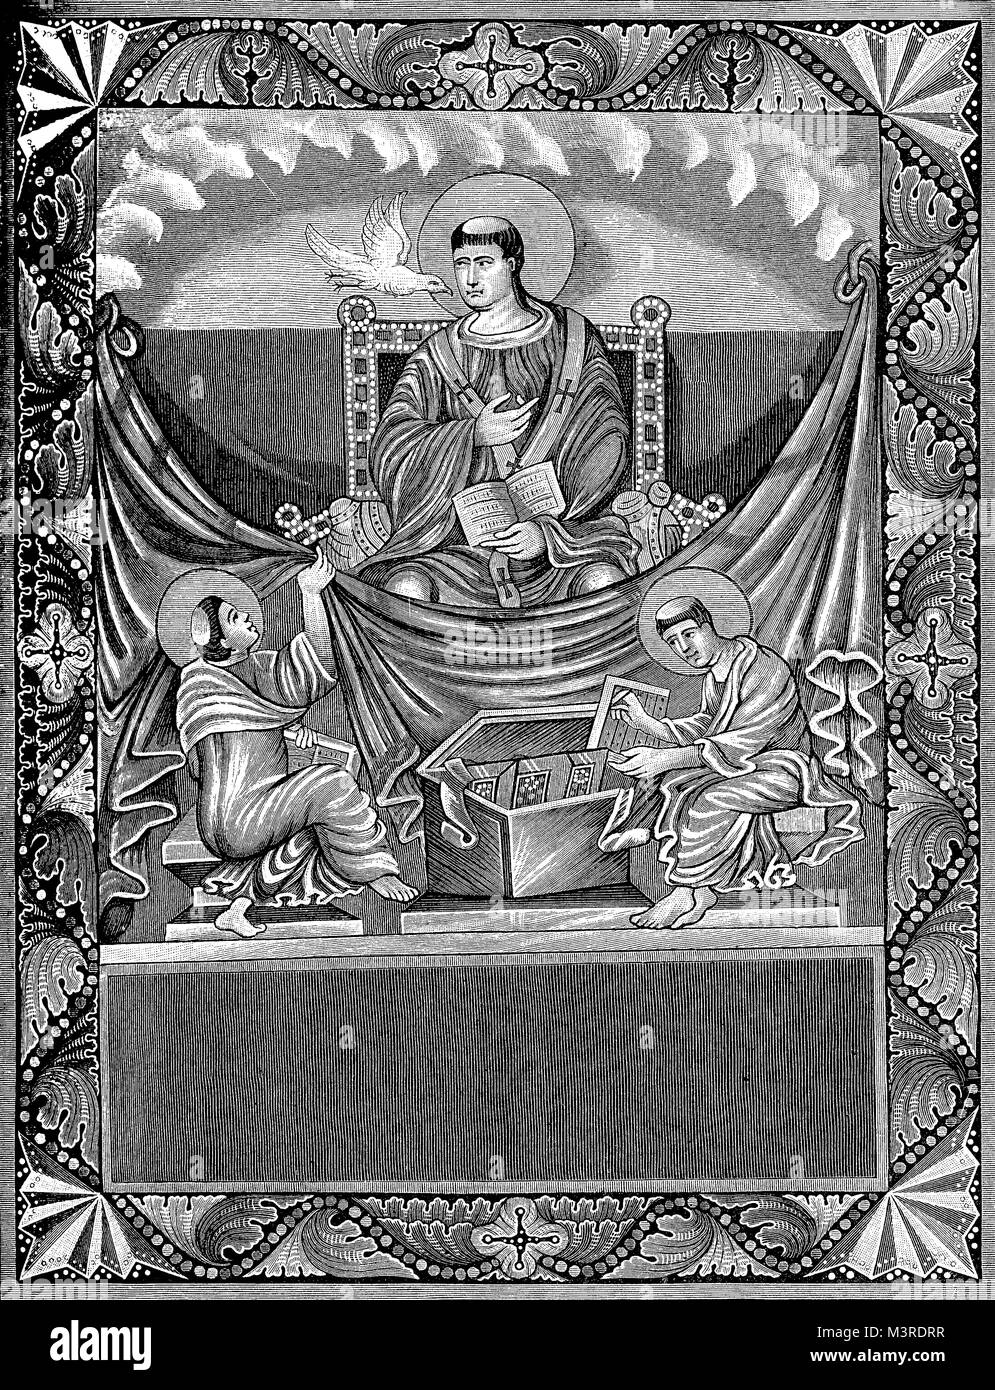 Miniatur aus einer mittelalterlichen Evangelium Buch der Hl. Gregor der Große, Papst der katholischen Kirche mit dem Namen Gregorius ich in VI Jahrhundert Stockfoto